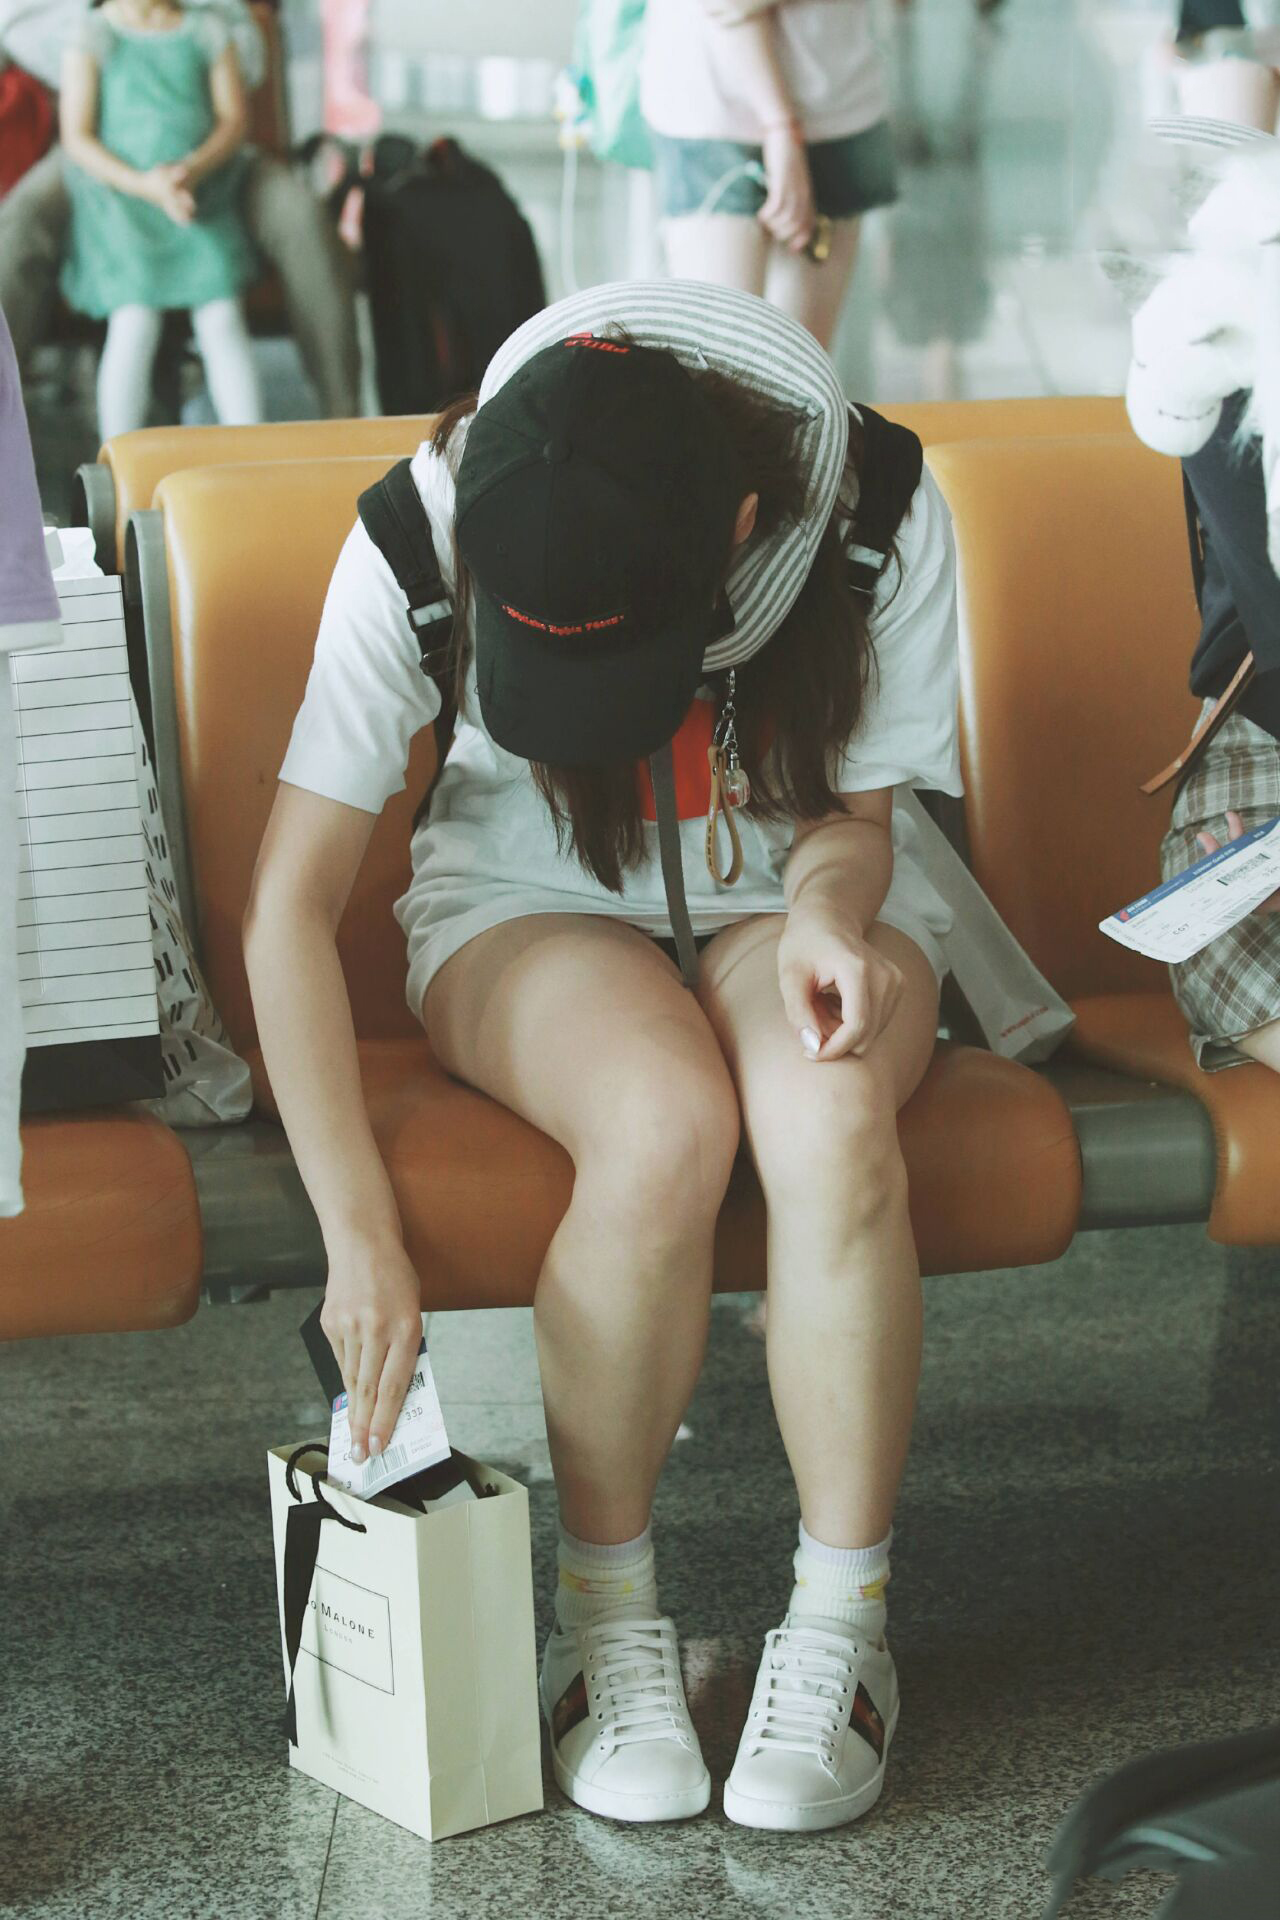 机场上的她看起来很累很困乏的样子,还一直捂着肚子貌似很不舒服啊